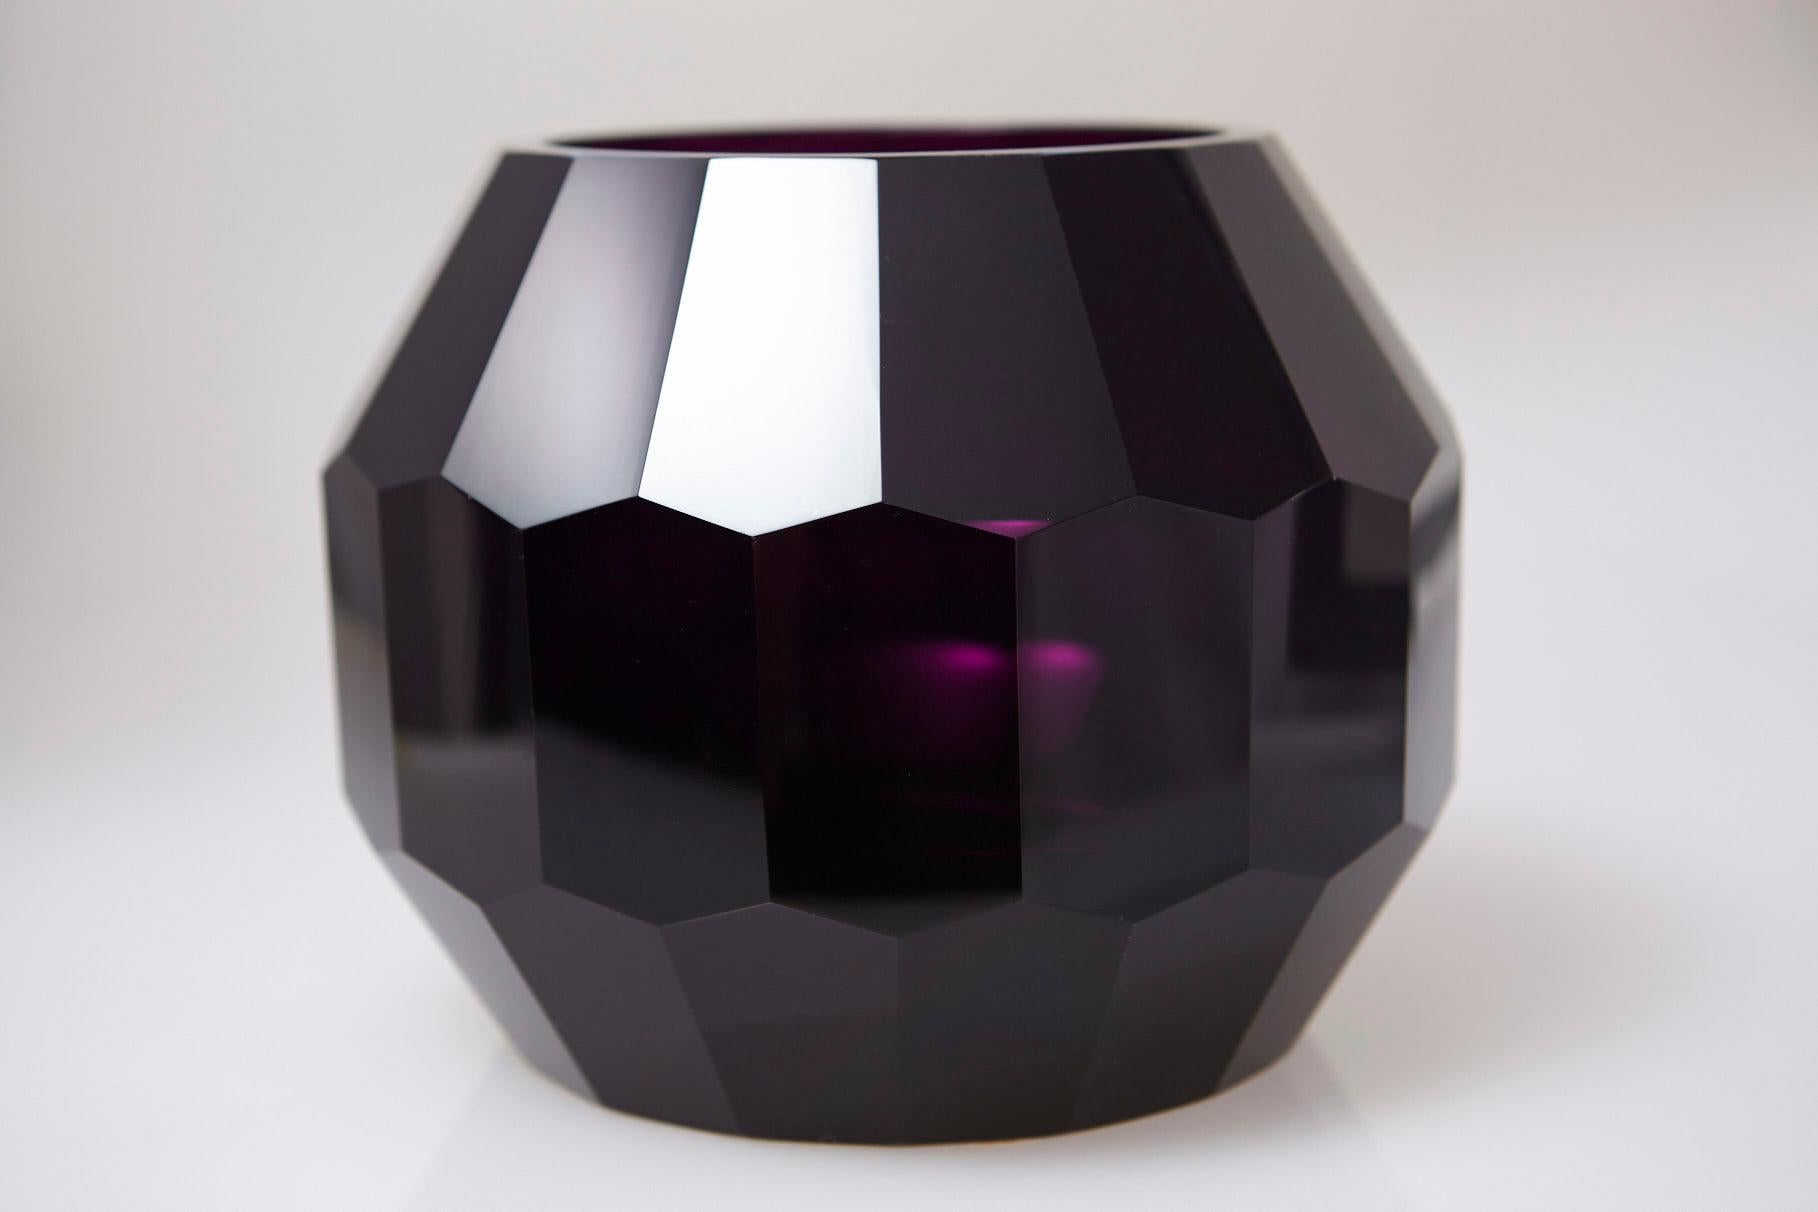 Schöne große dunkelviolette handgeschliffene und handpolierte Kristallvase. 
Das Stück ist unsigniert, wird aber Josef Hoffmann für Moser & Söhne zugeschrieben, um die 1920er Jahre. 
Die Vase ist in sehr gutem Zustand, ohne Absplitterungen oder